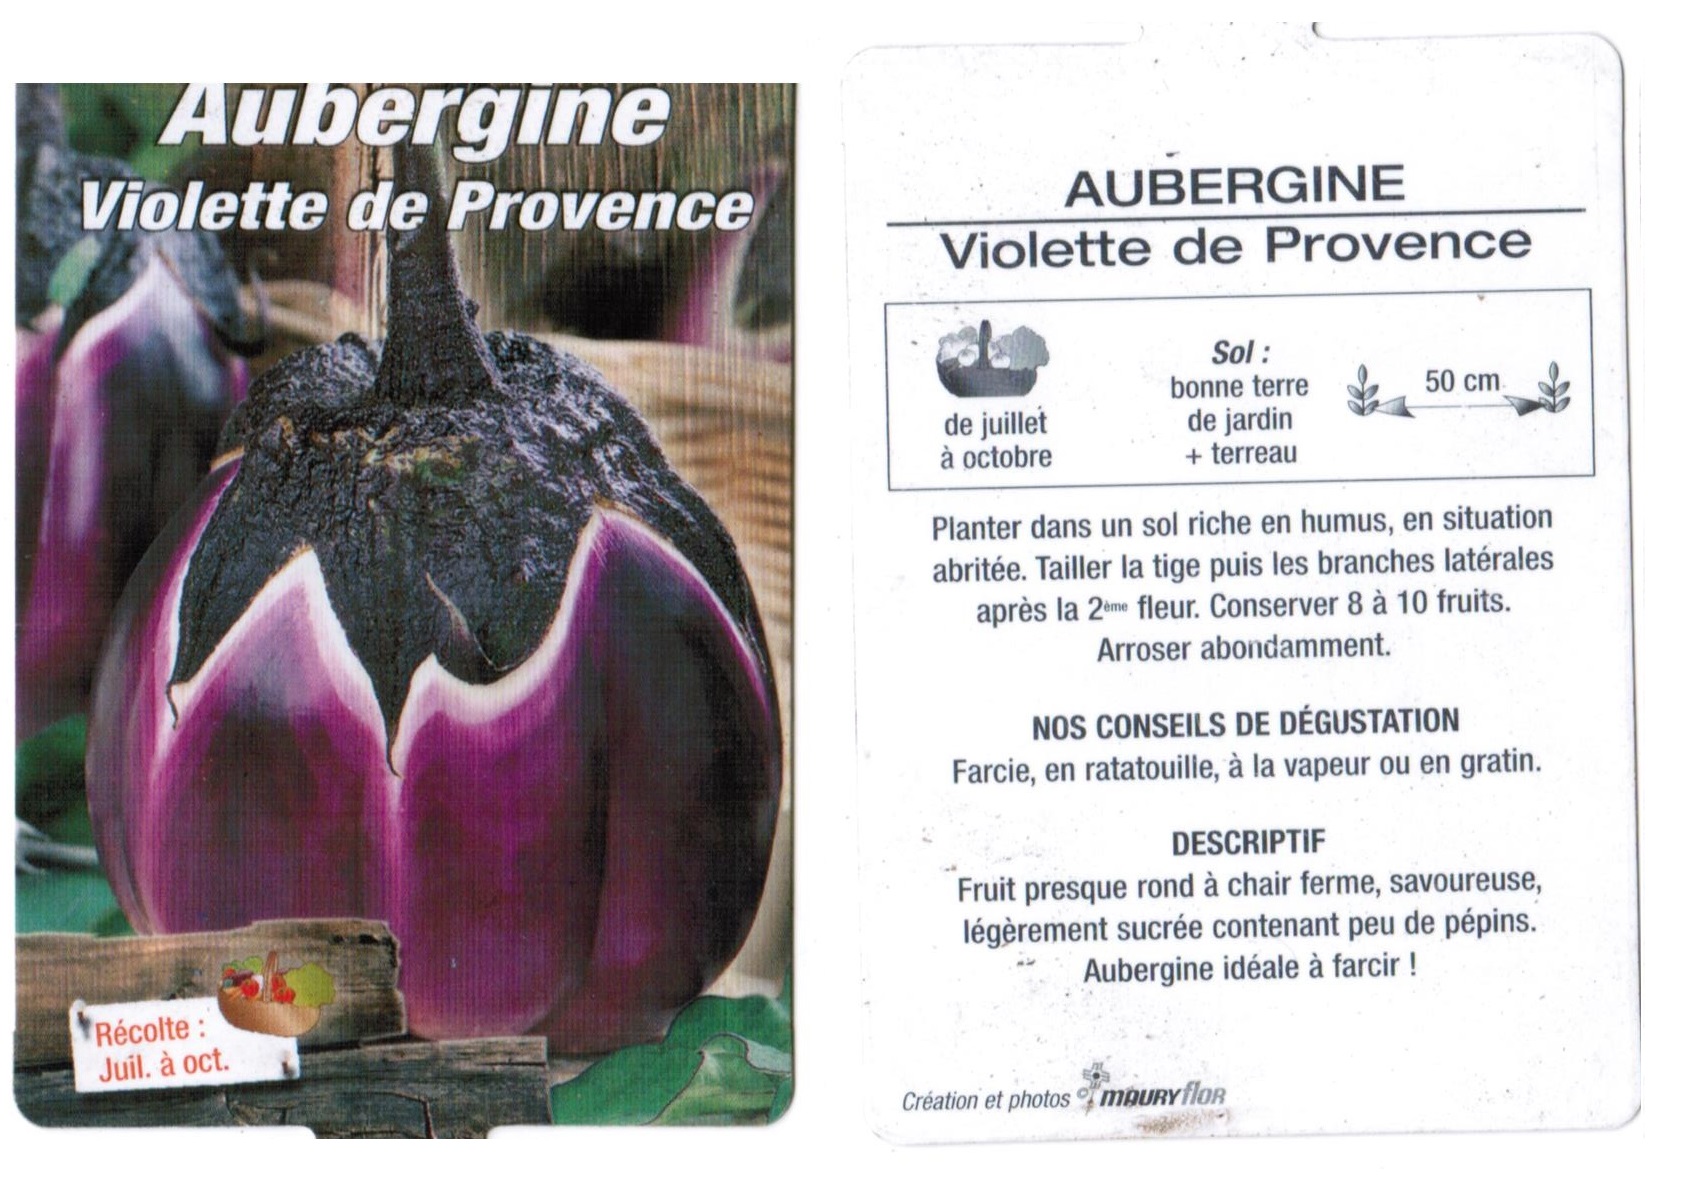 Aubergine violette de Provence plantons plants potager - La jardinerie de pessicart nice - Livraison a domicile nice 06 plantes vertes terres terreaux jardinage arbres cactus